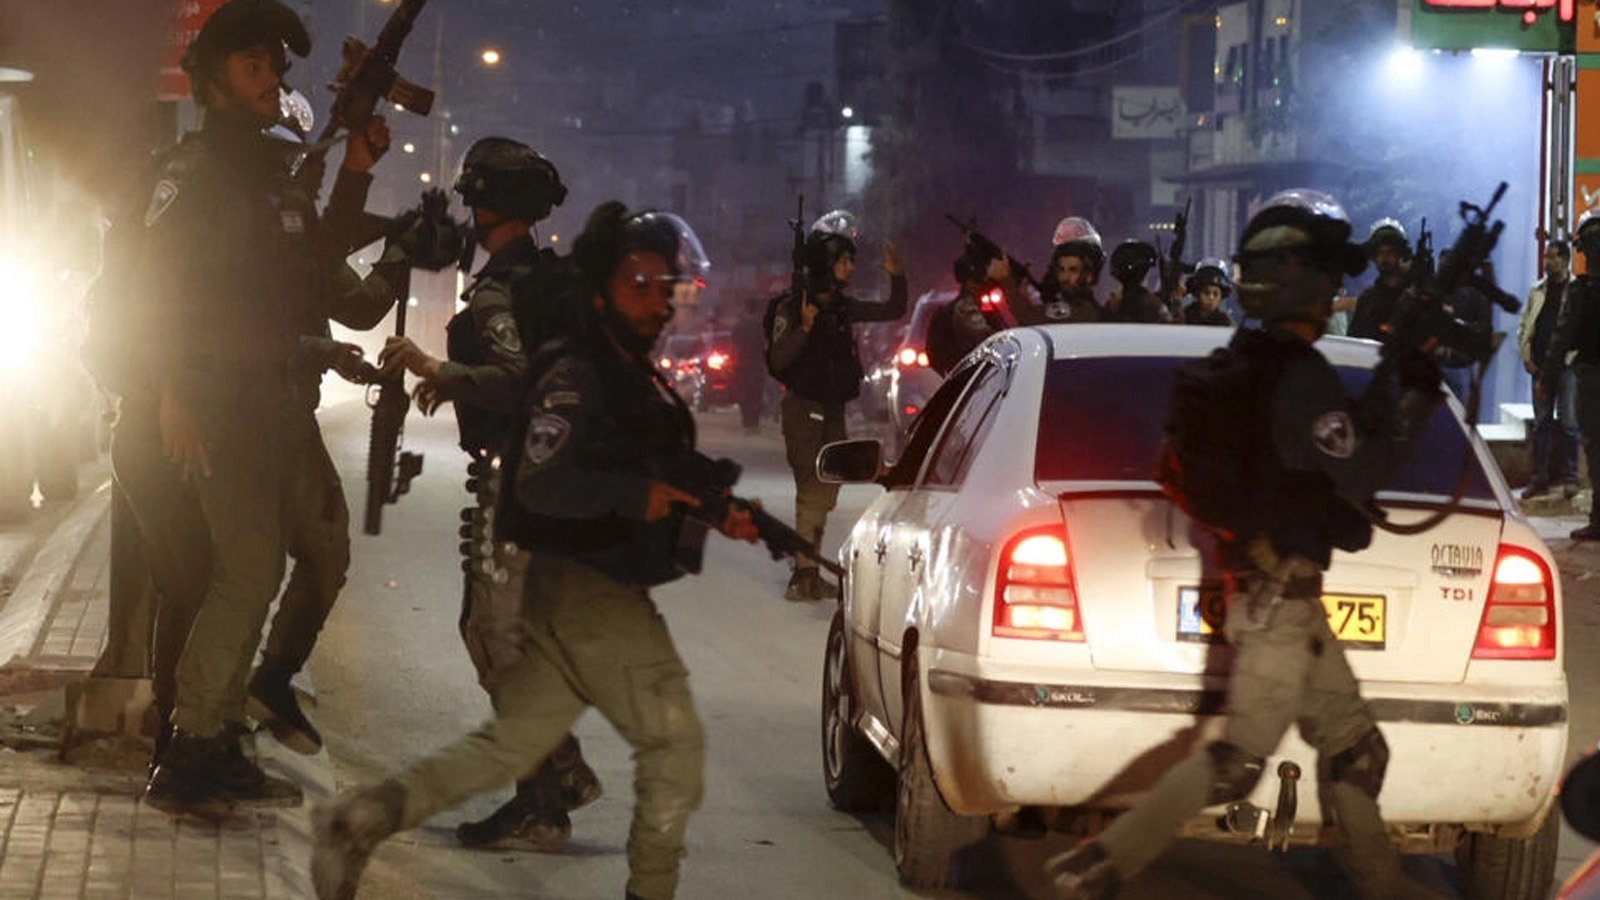 صورة أرشيفية لقوات الأمن الإسرائيلية تنتشر في مدينة حوارة بالضفة الغربية المحتلة، في أعقاب حادثة قُتل خلالها رجل فلسطيني برصاص الشرطة الإسرائيلية